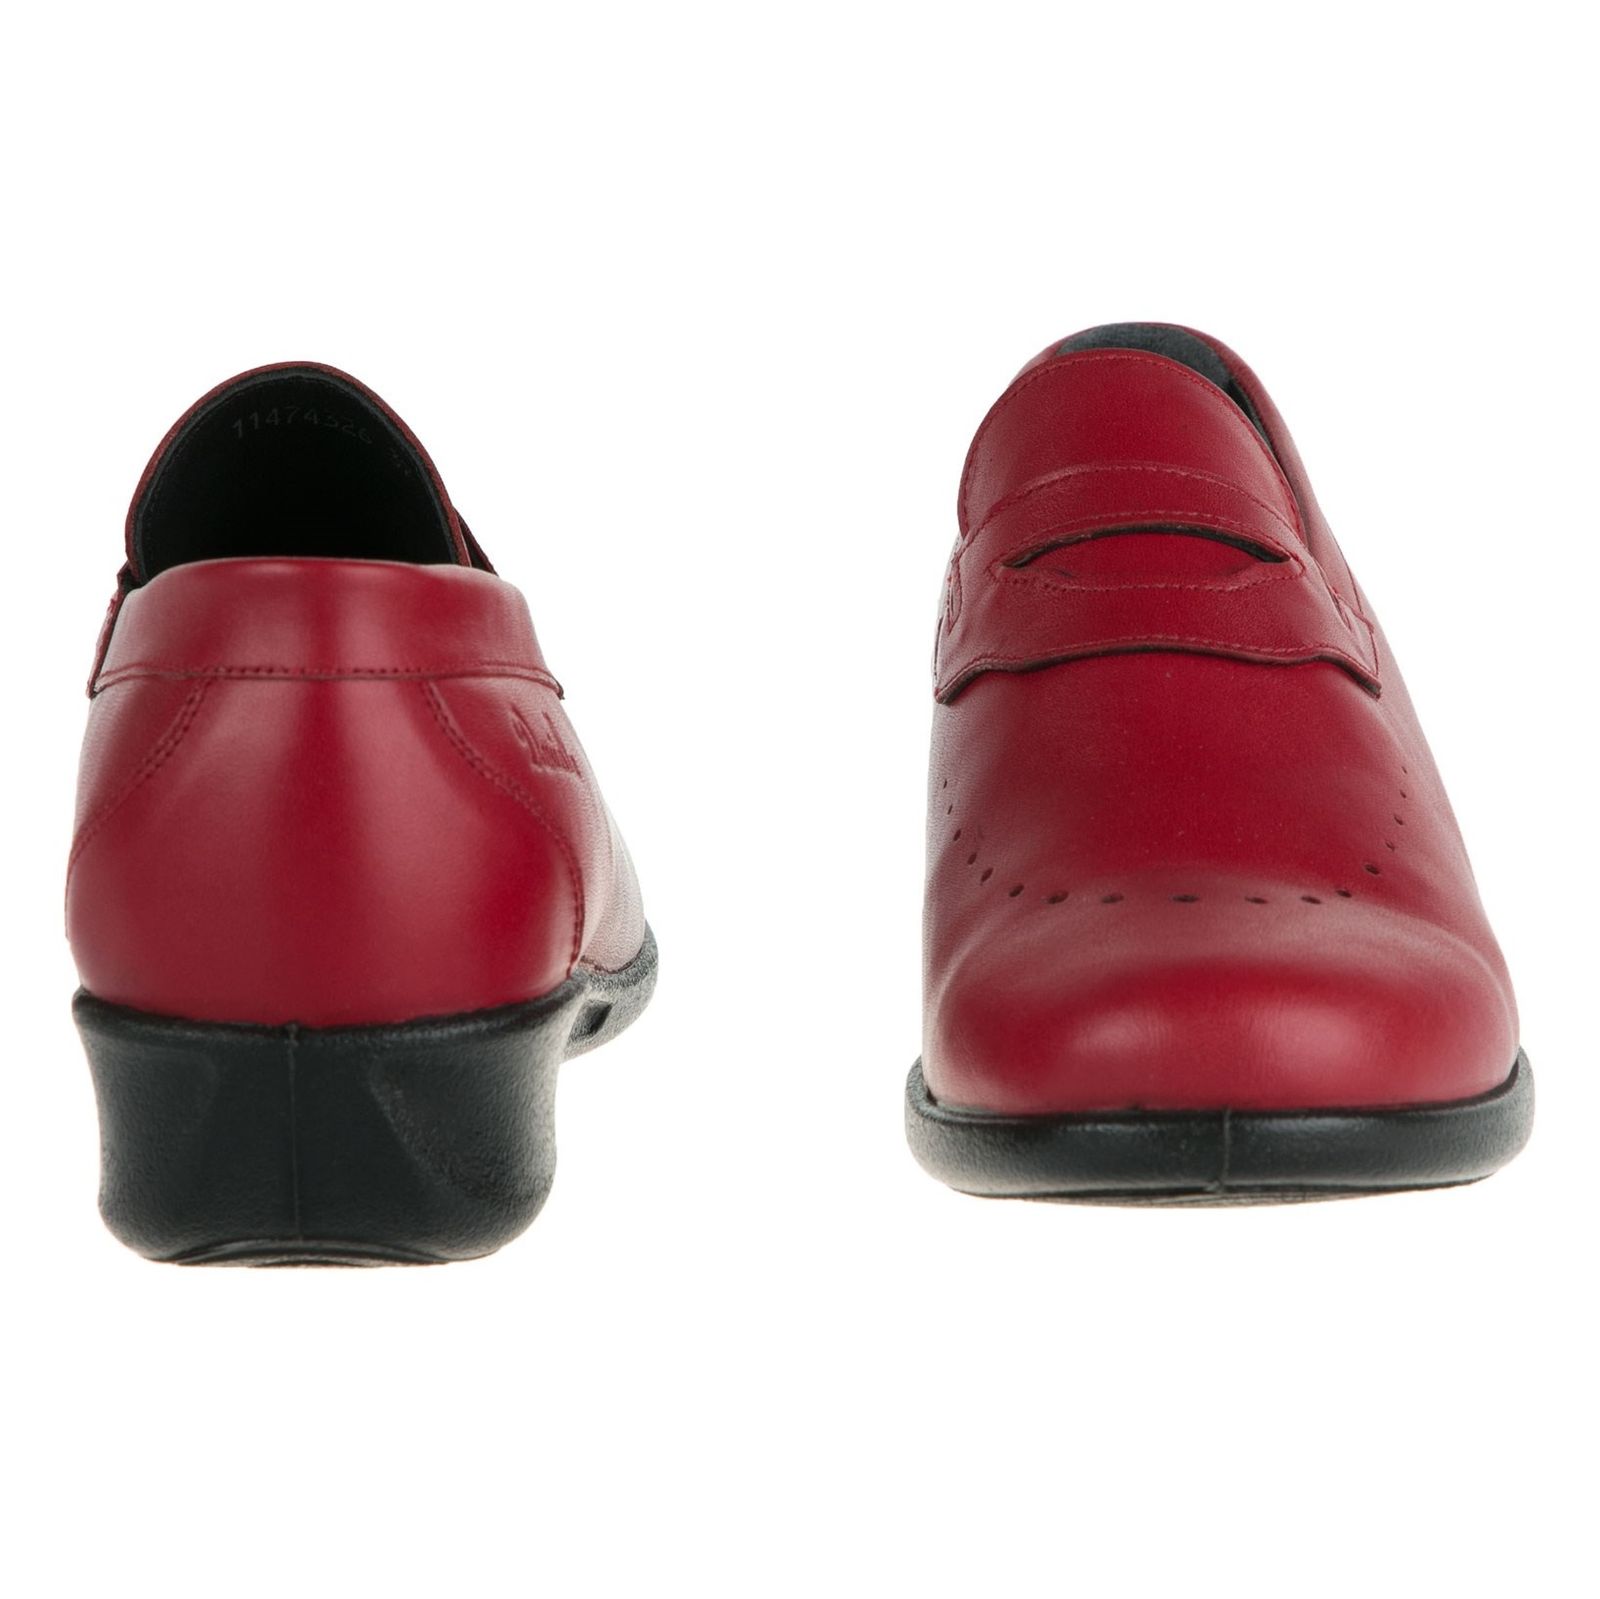 کفش چرم تخت زنانه Betina - دنیلی - قرمز  - 5